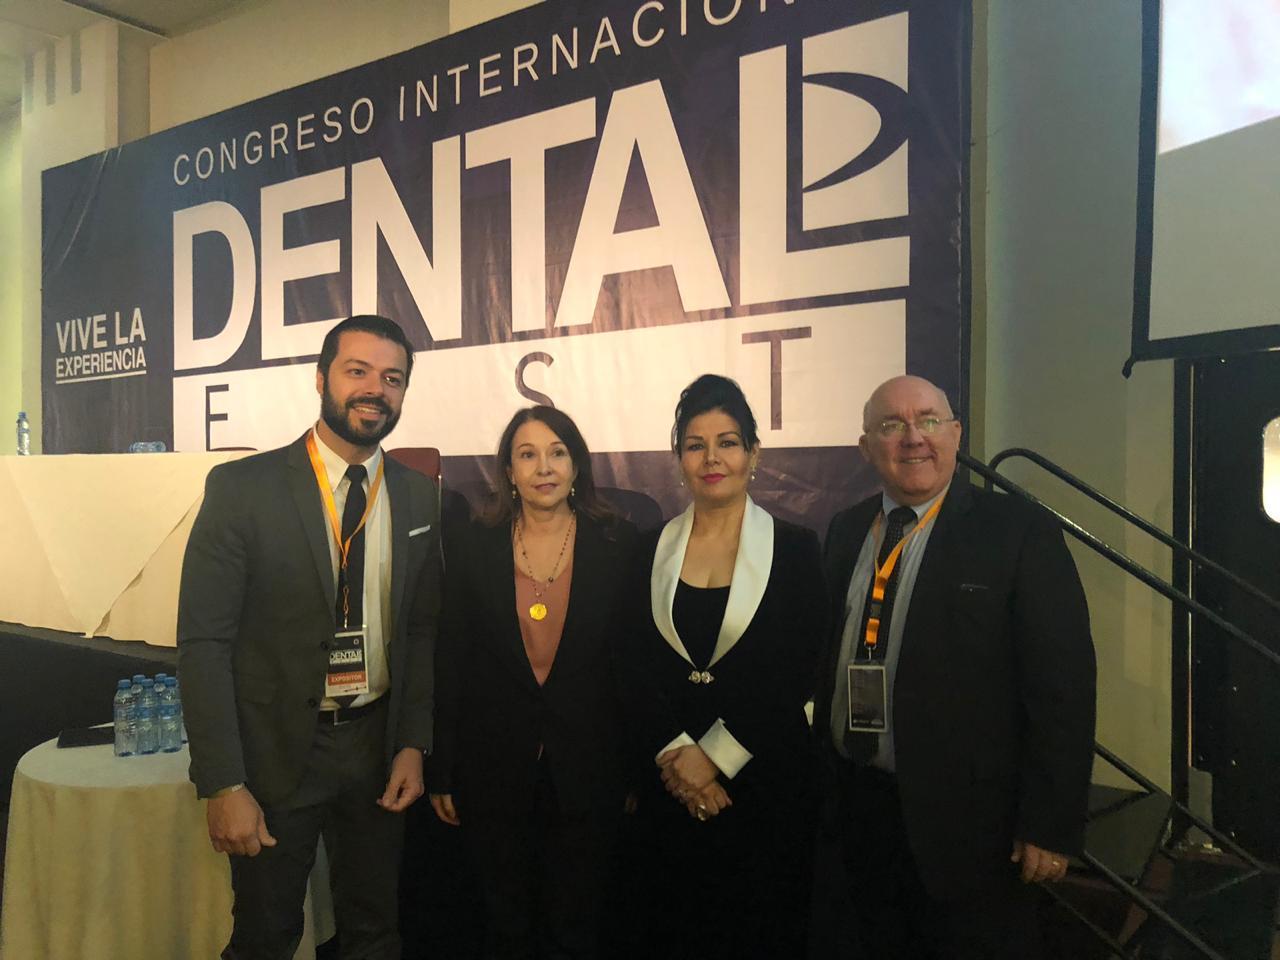 Inauguración del Congreso Internacional Dental Fest